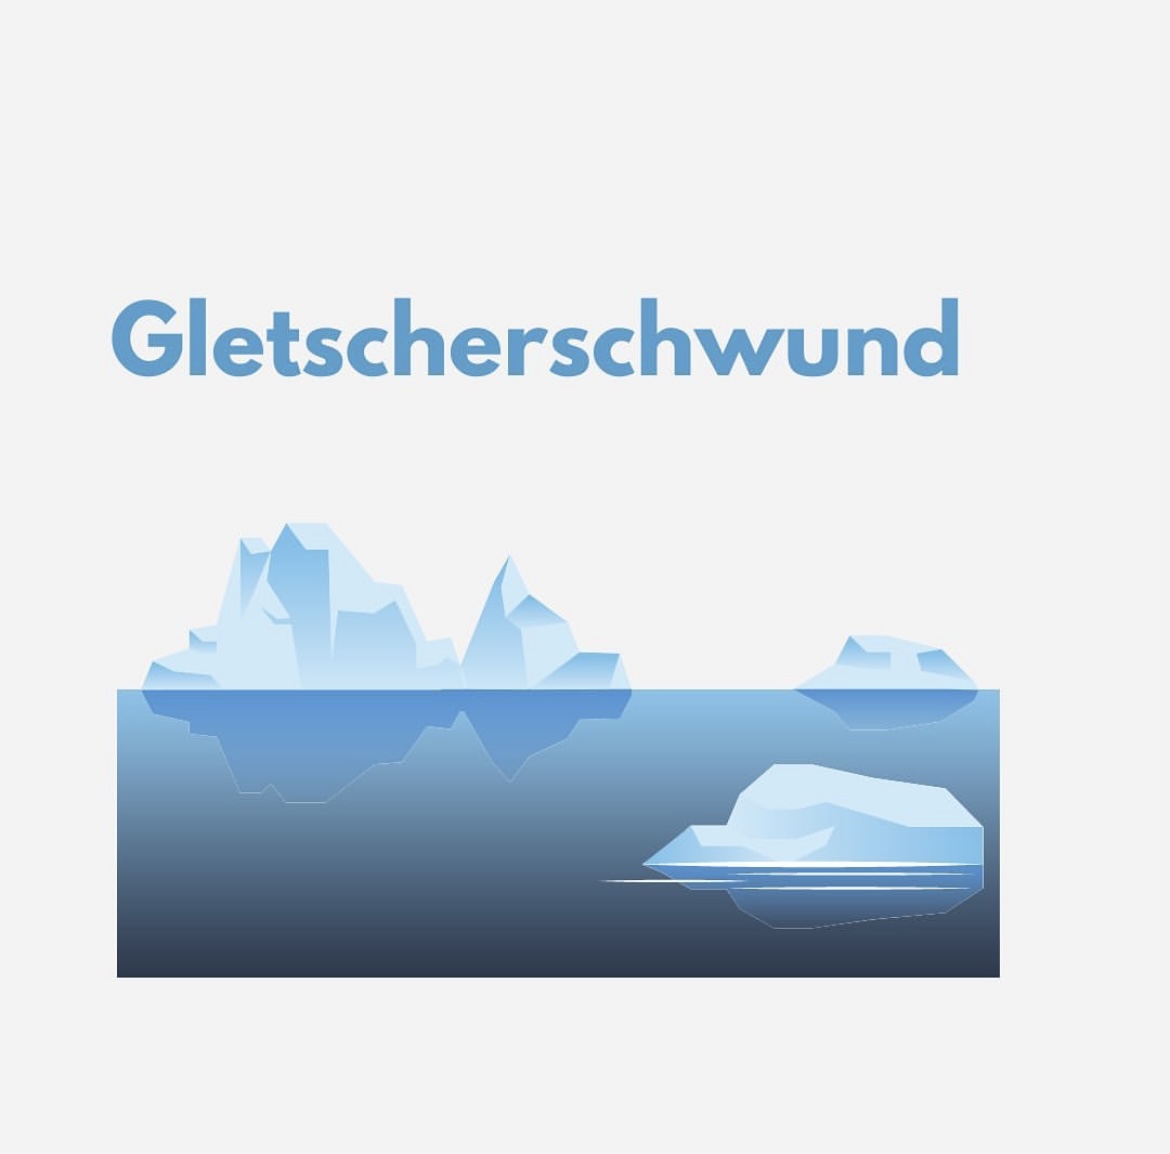 You are currently viewing Gletscherschwund